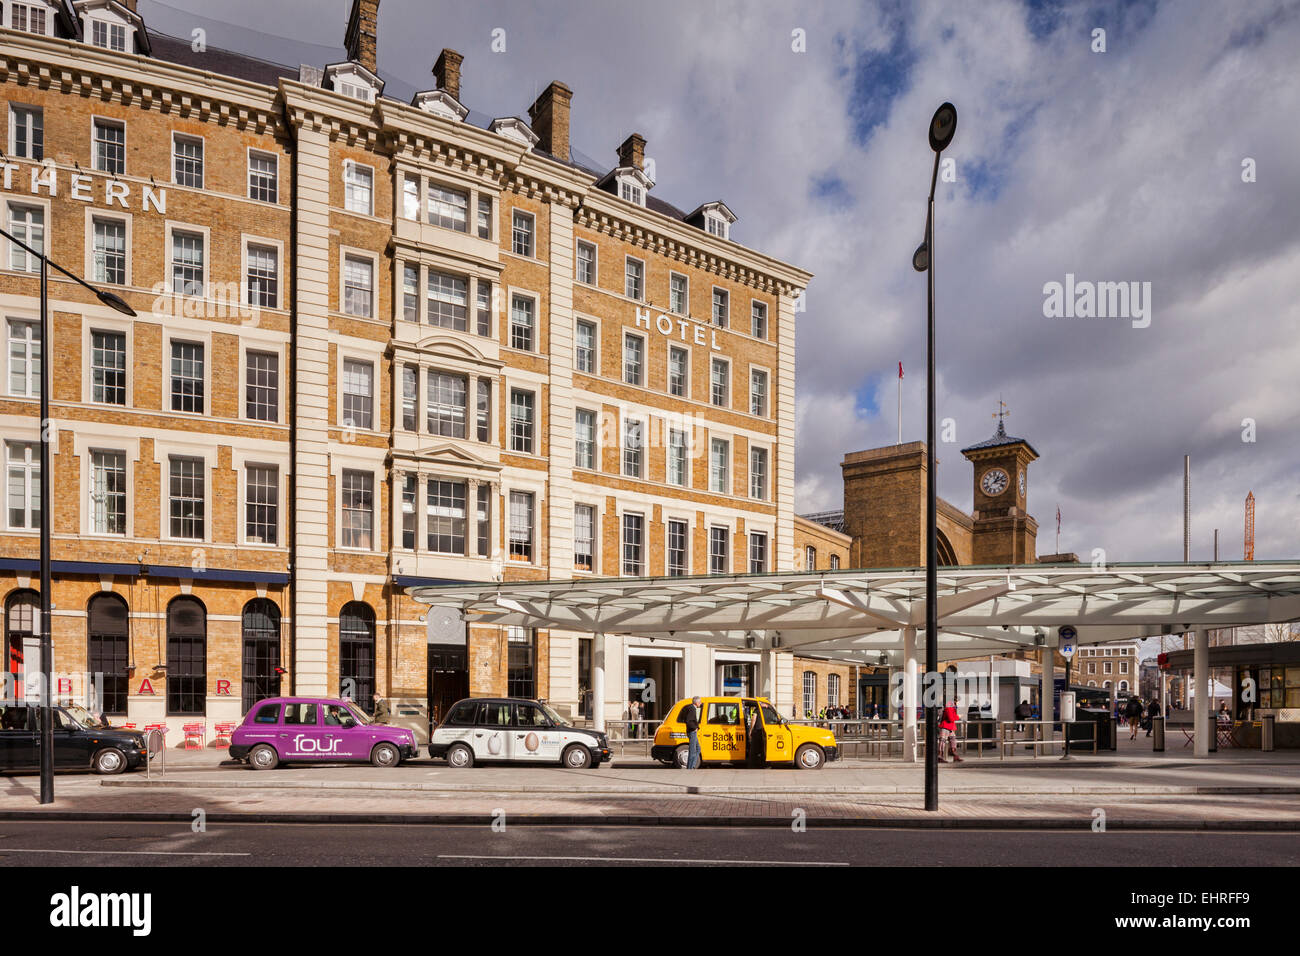 Grande Hotel del nord e a Londra i taxi, King's Cross a Londra, Inghilterra, Regno Unito. Foto Stock